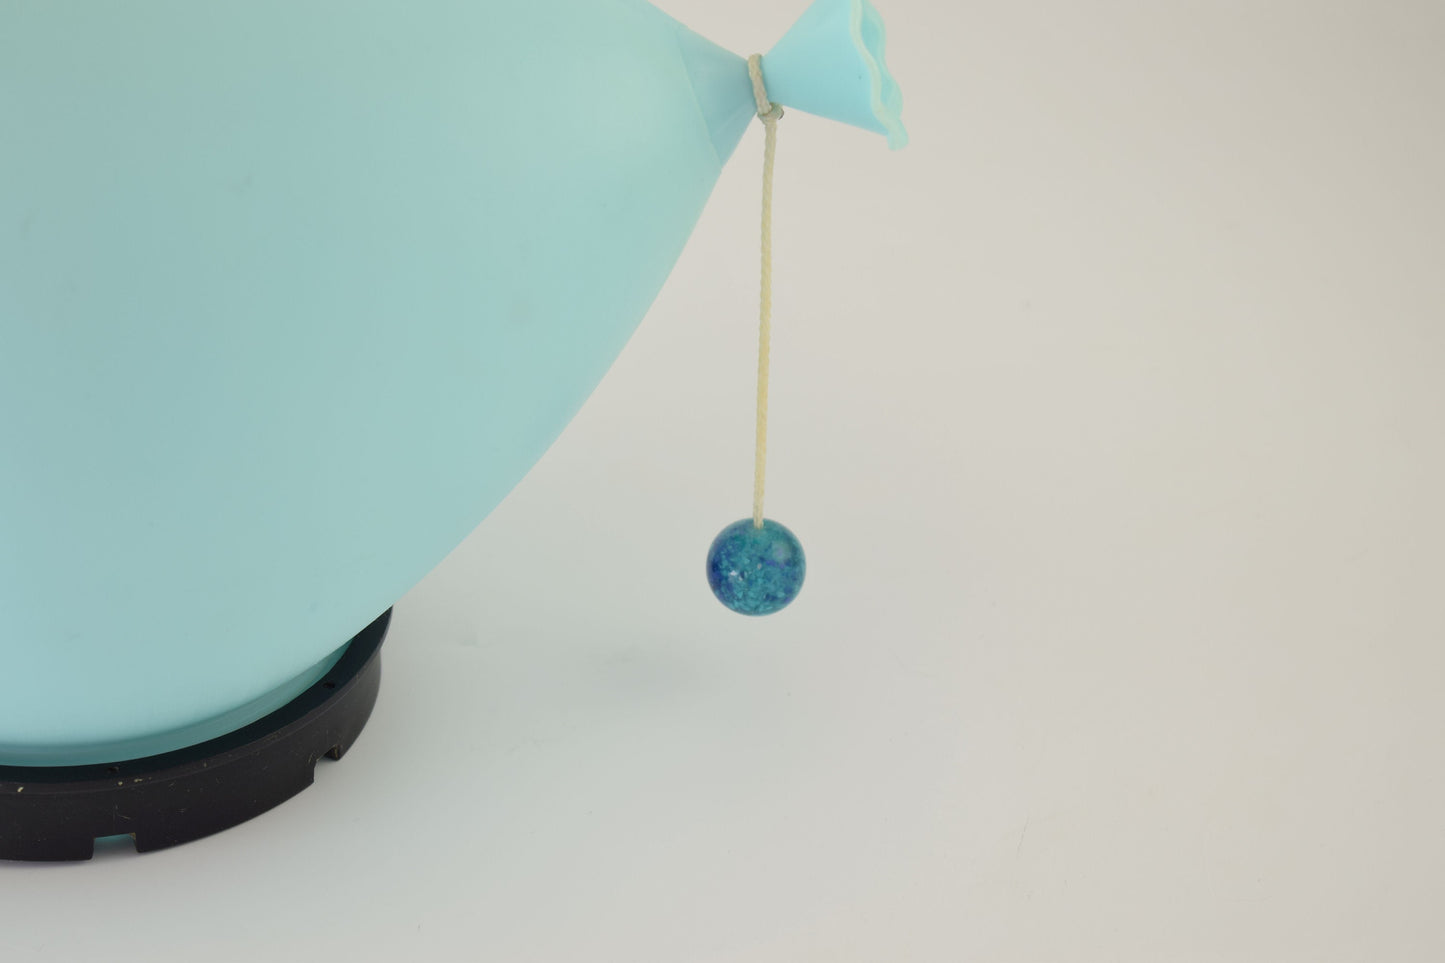 Blauwe ballonlamp ontworpen door Yves Christin voor bilumen, kleinste versie